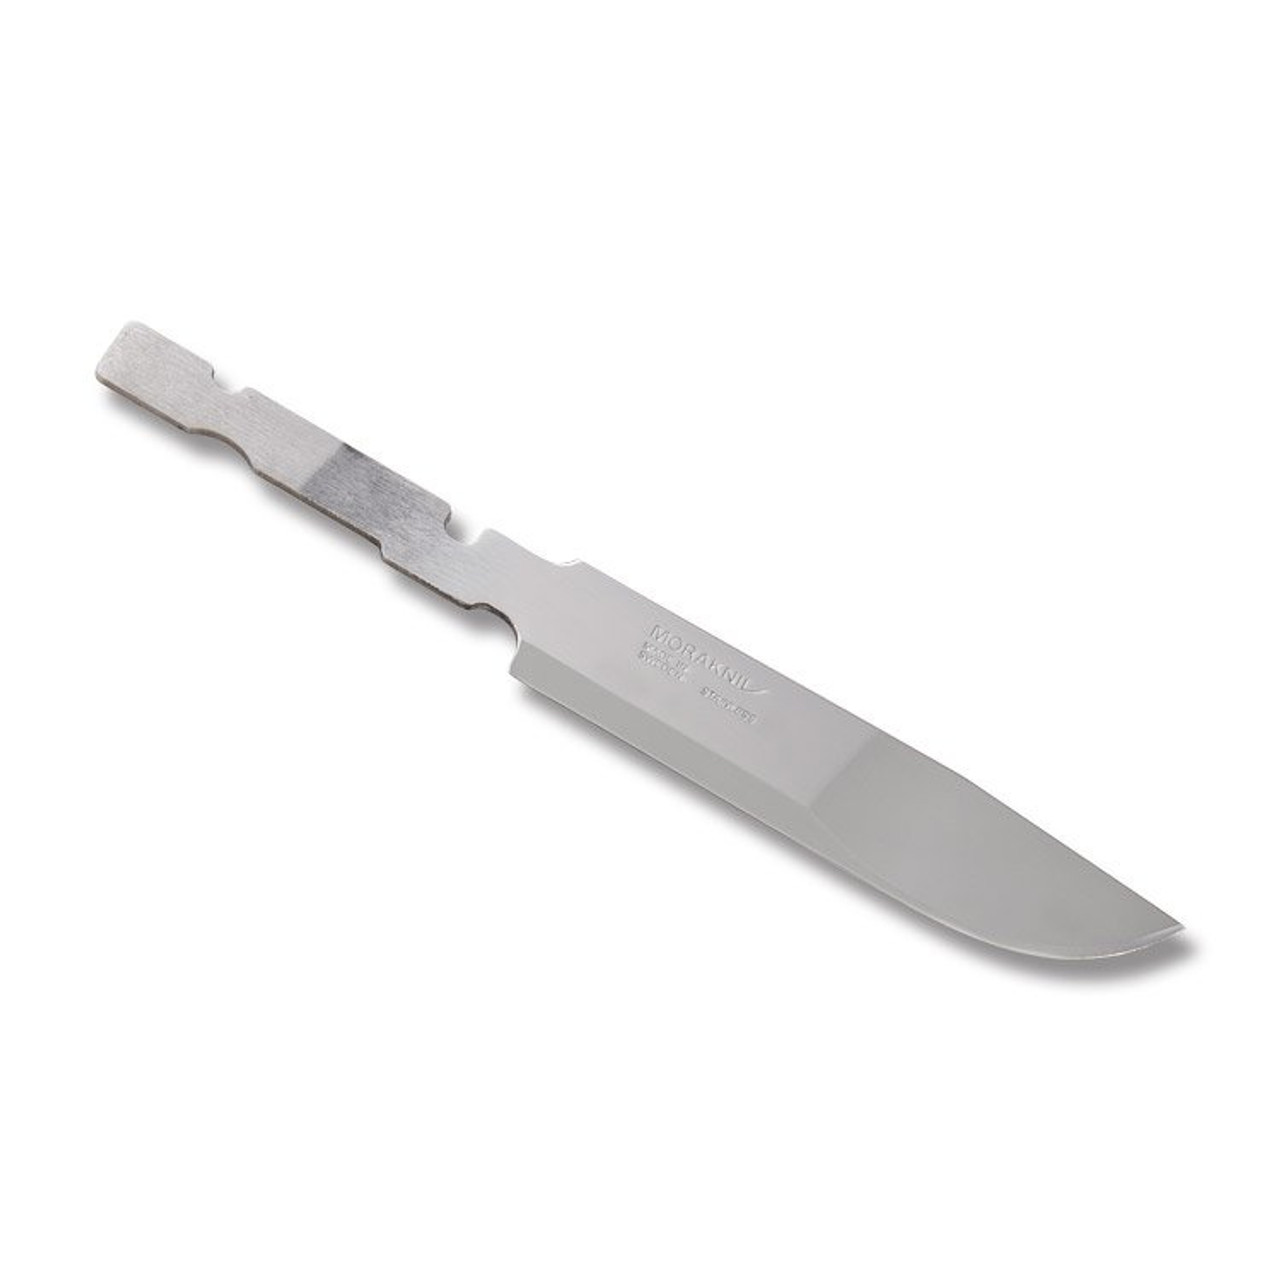 Morakniv Knife Blade Blank No. 2, Carbon Steel, 7-1/4'' Overall x 4-1/8''  Blade - Rockler